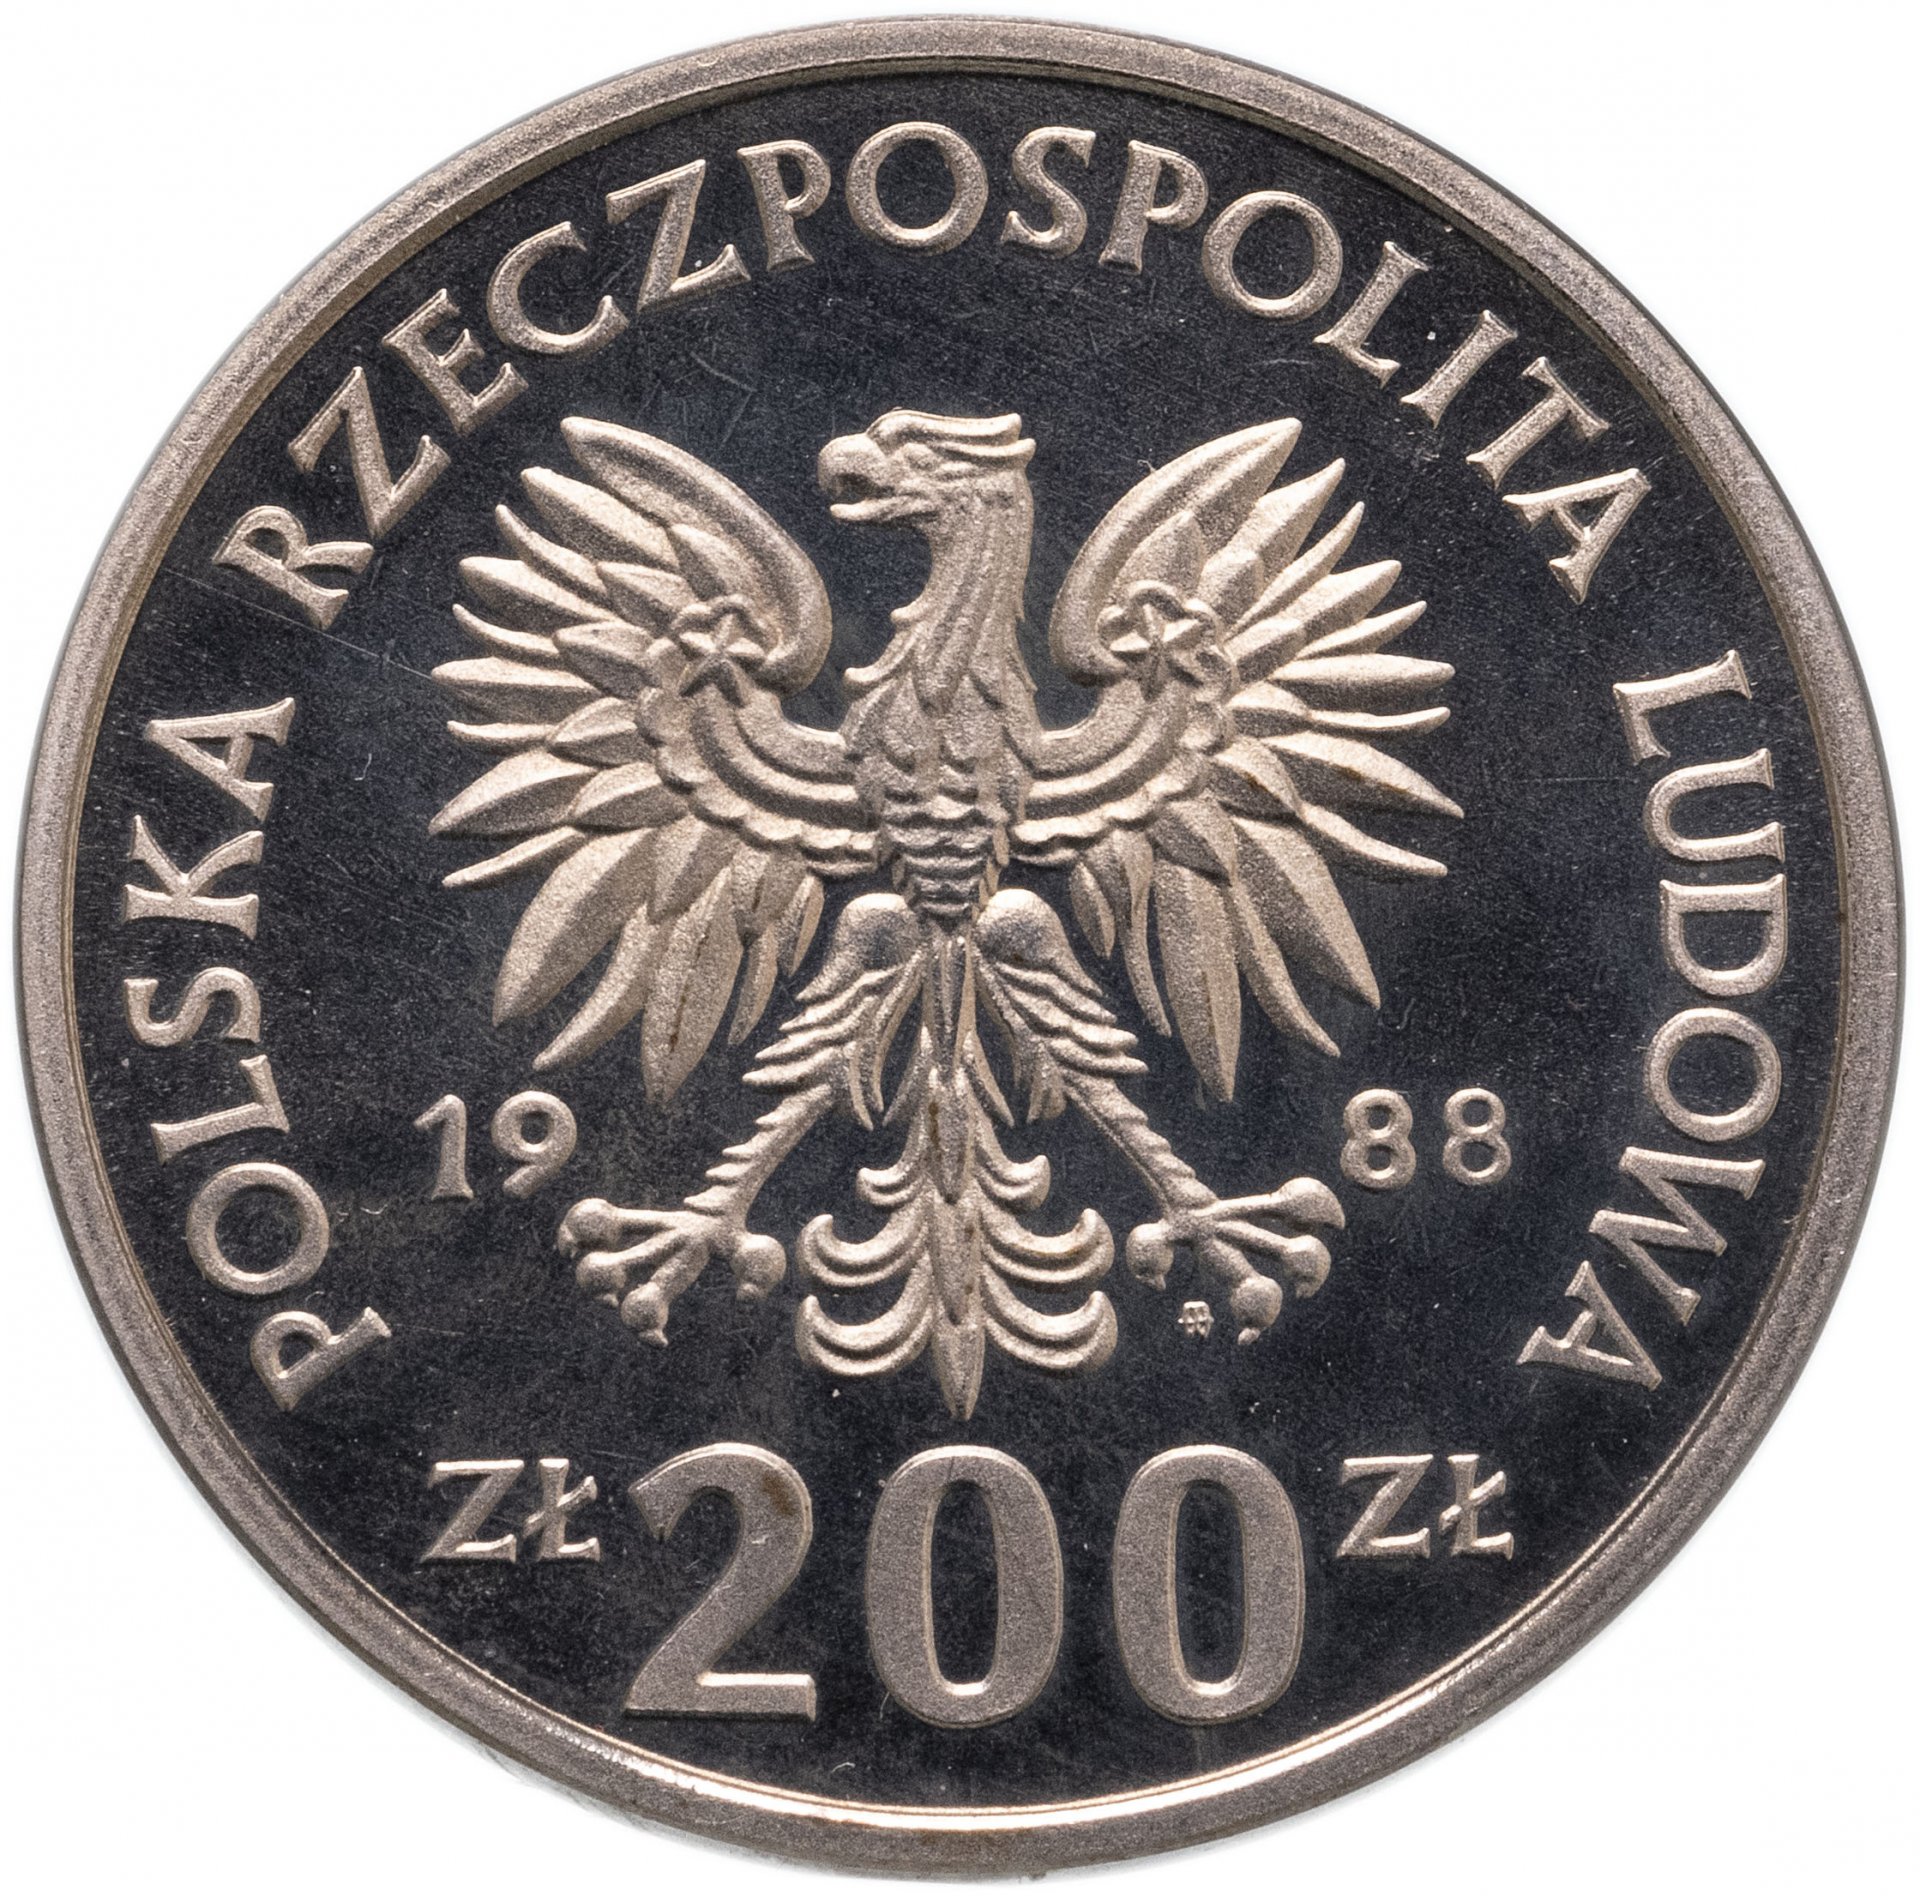 1000 Злотых Польша. 200 Zlotych. 500 Zlotych. Монета Польши 100 злотых 1985г. 5000 злотых в рублях